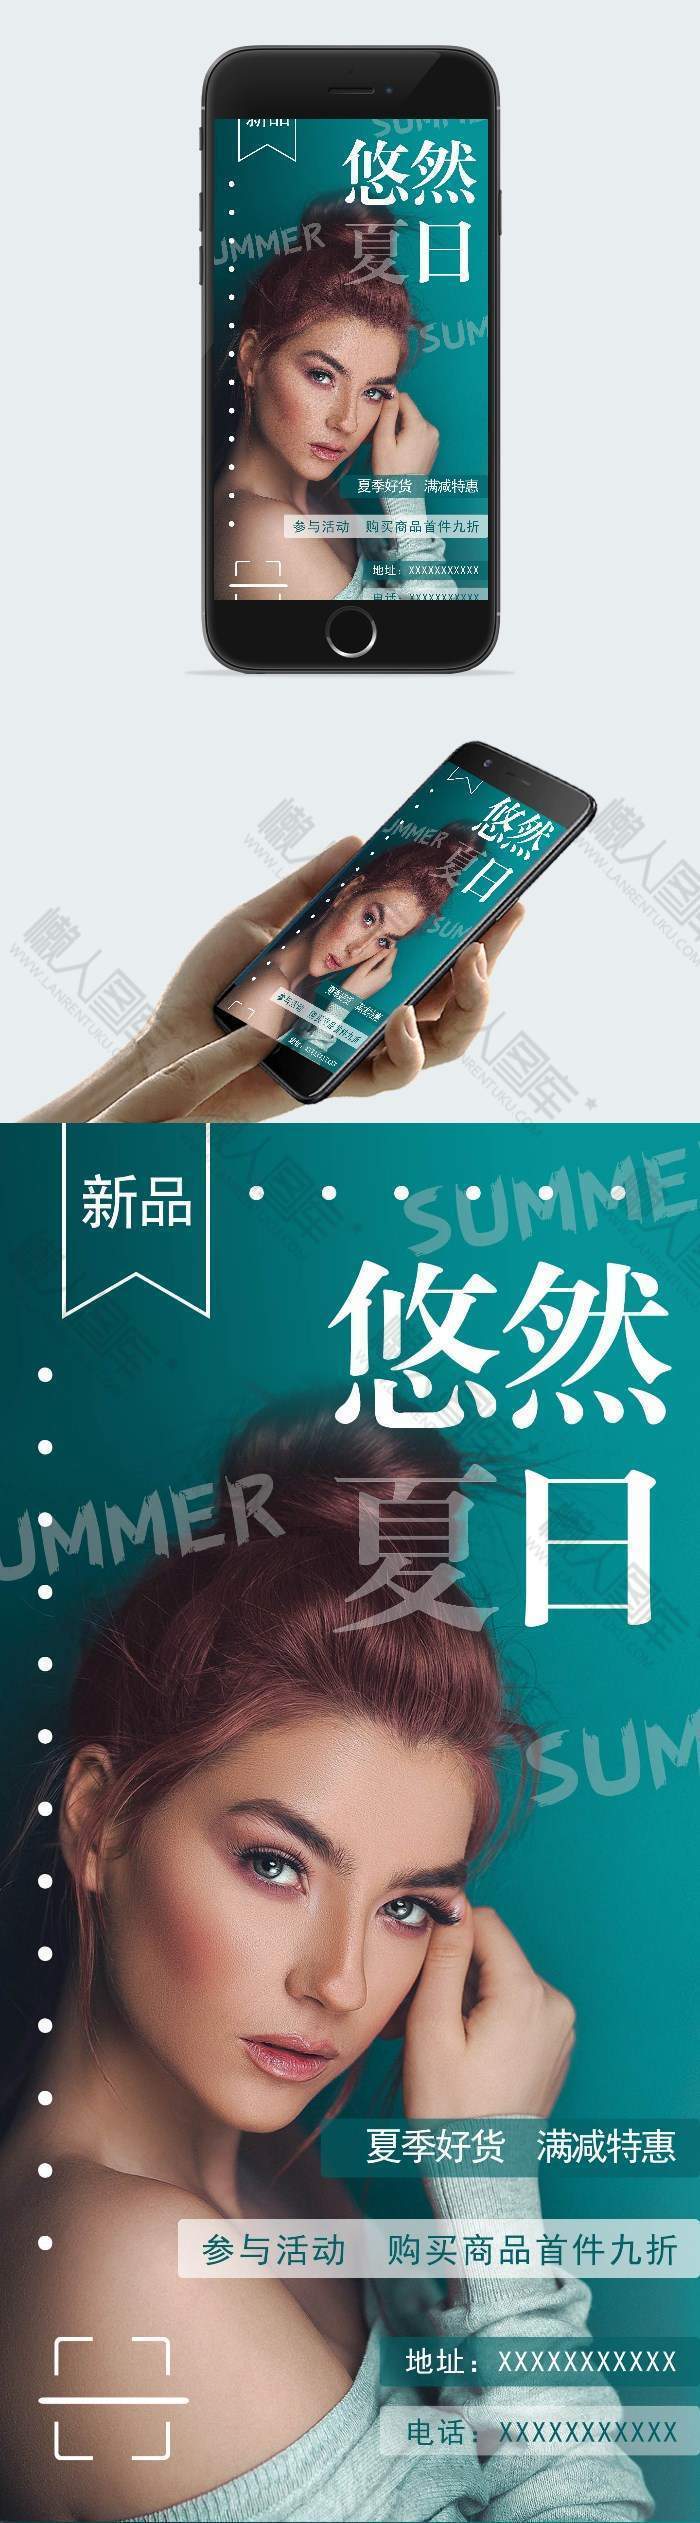 夏季商品促销折扣海报